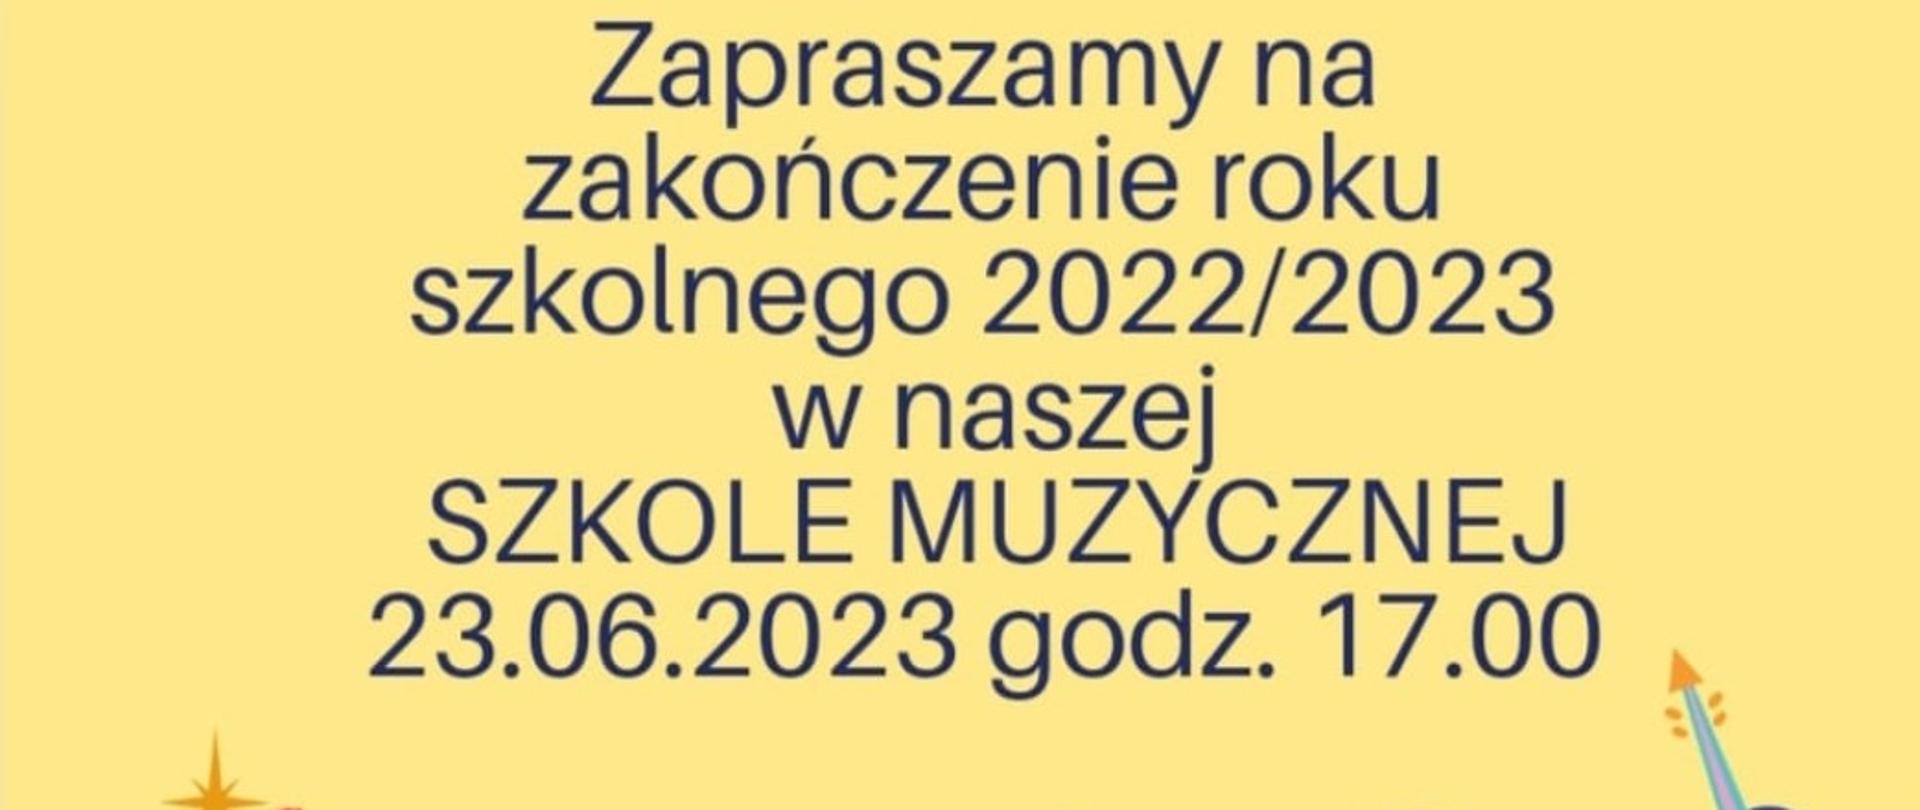 Zakończenie roku szkolnego 2022/2023 na żółtym tle